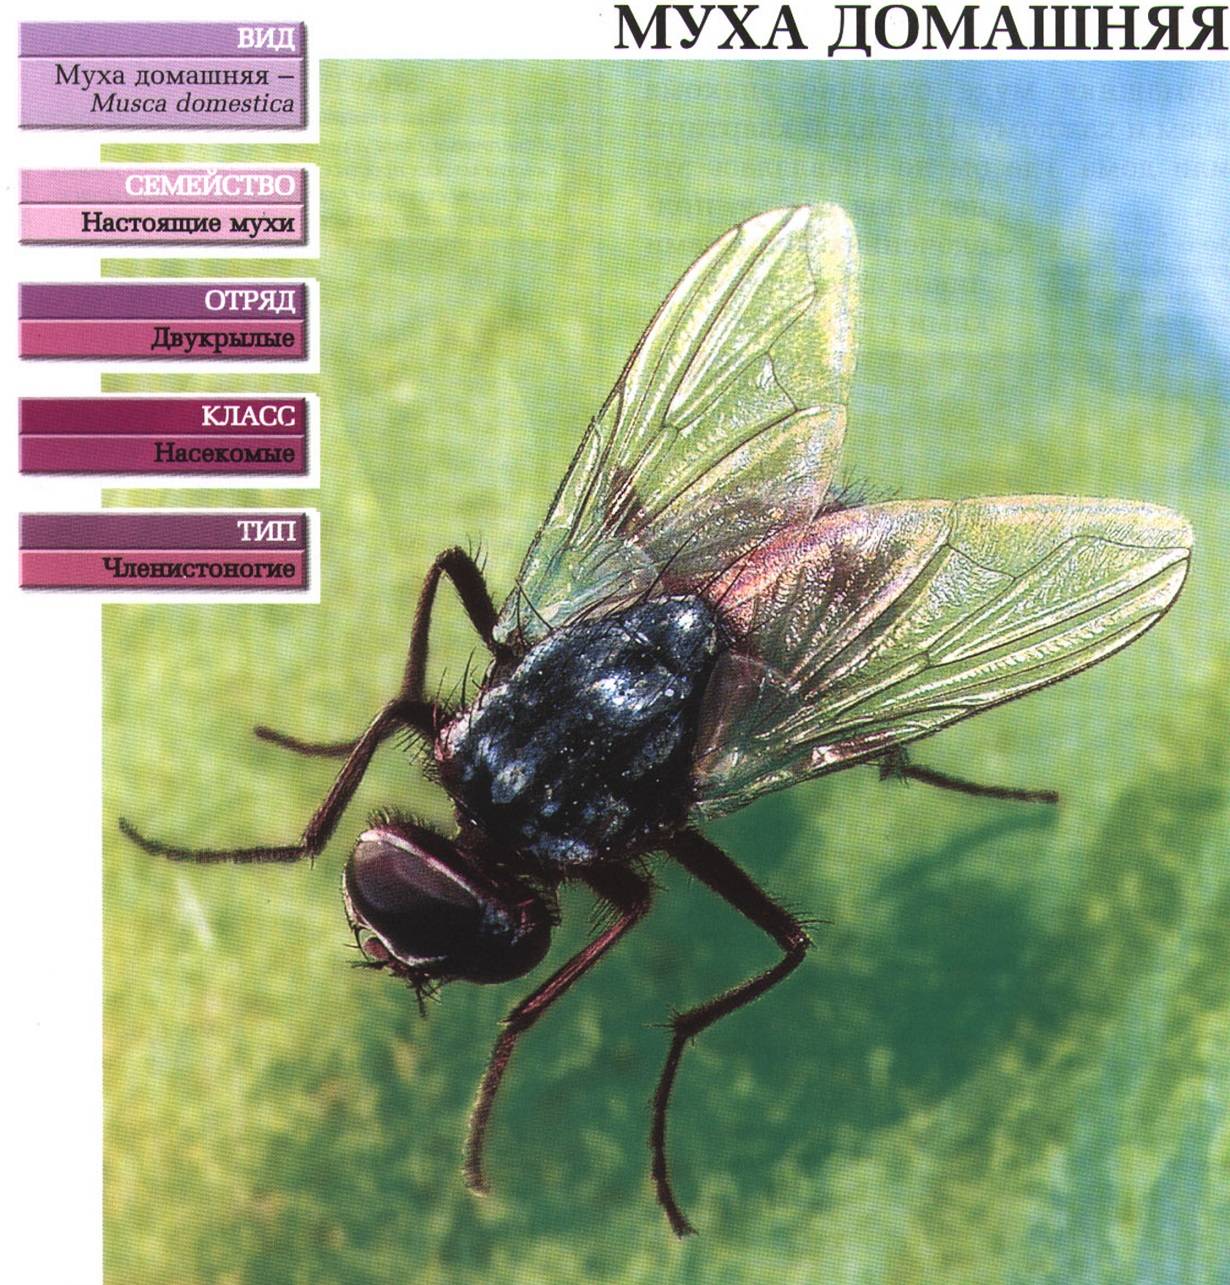 Описание и фото вольфартовой мухи